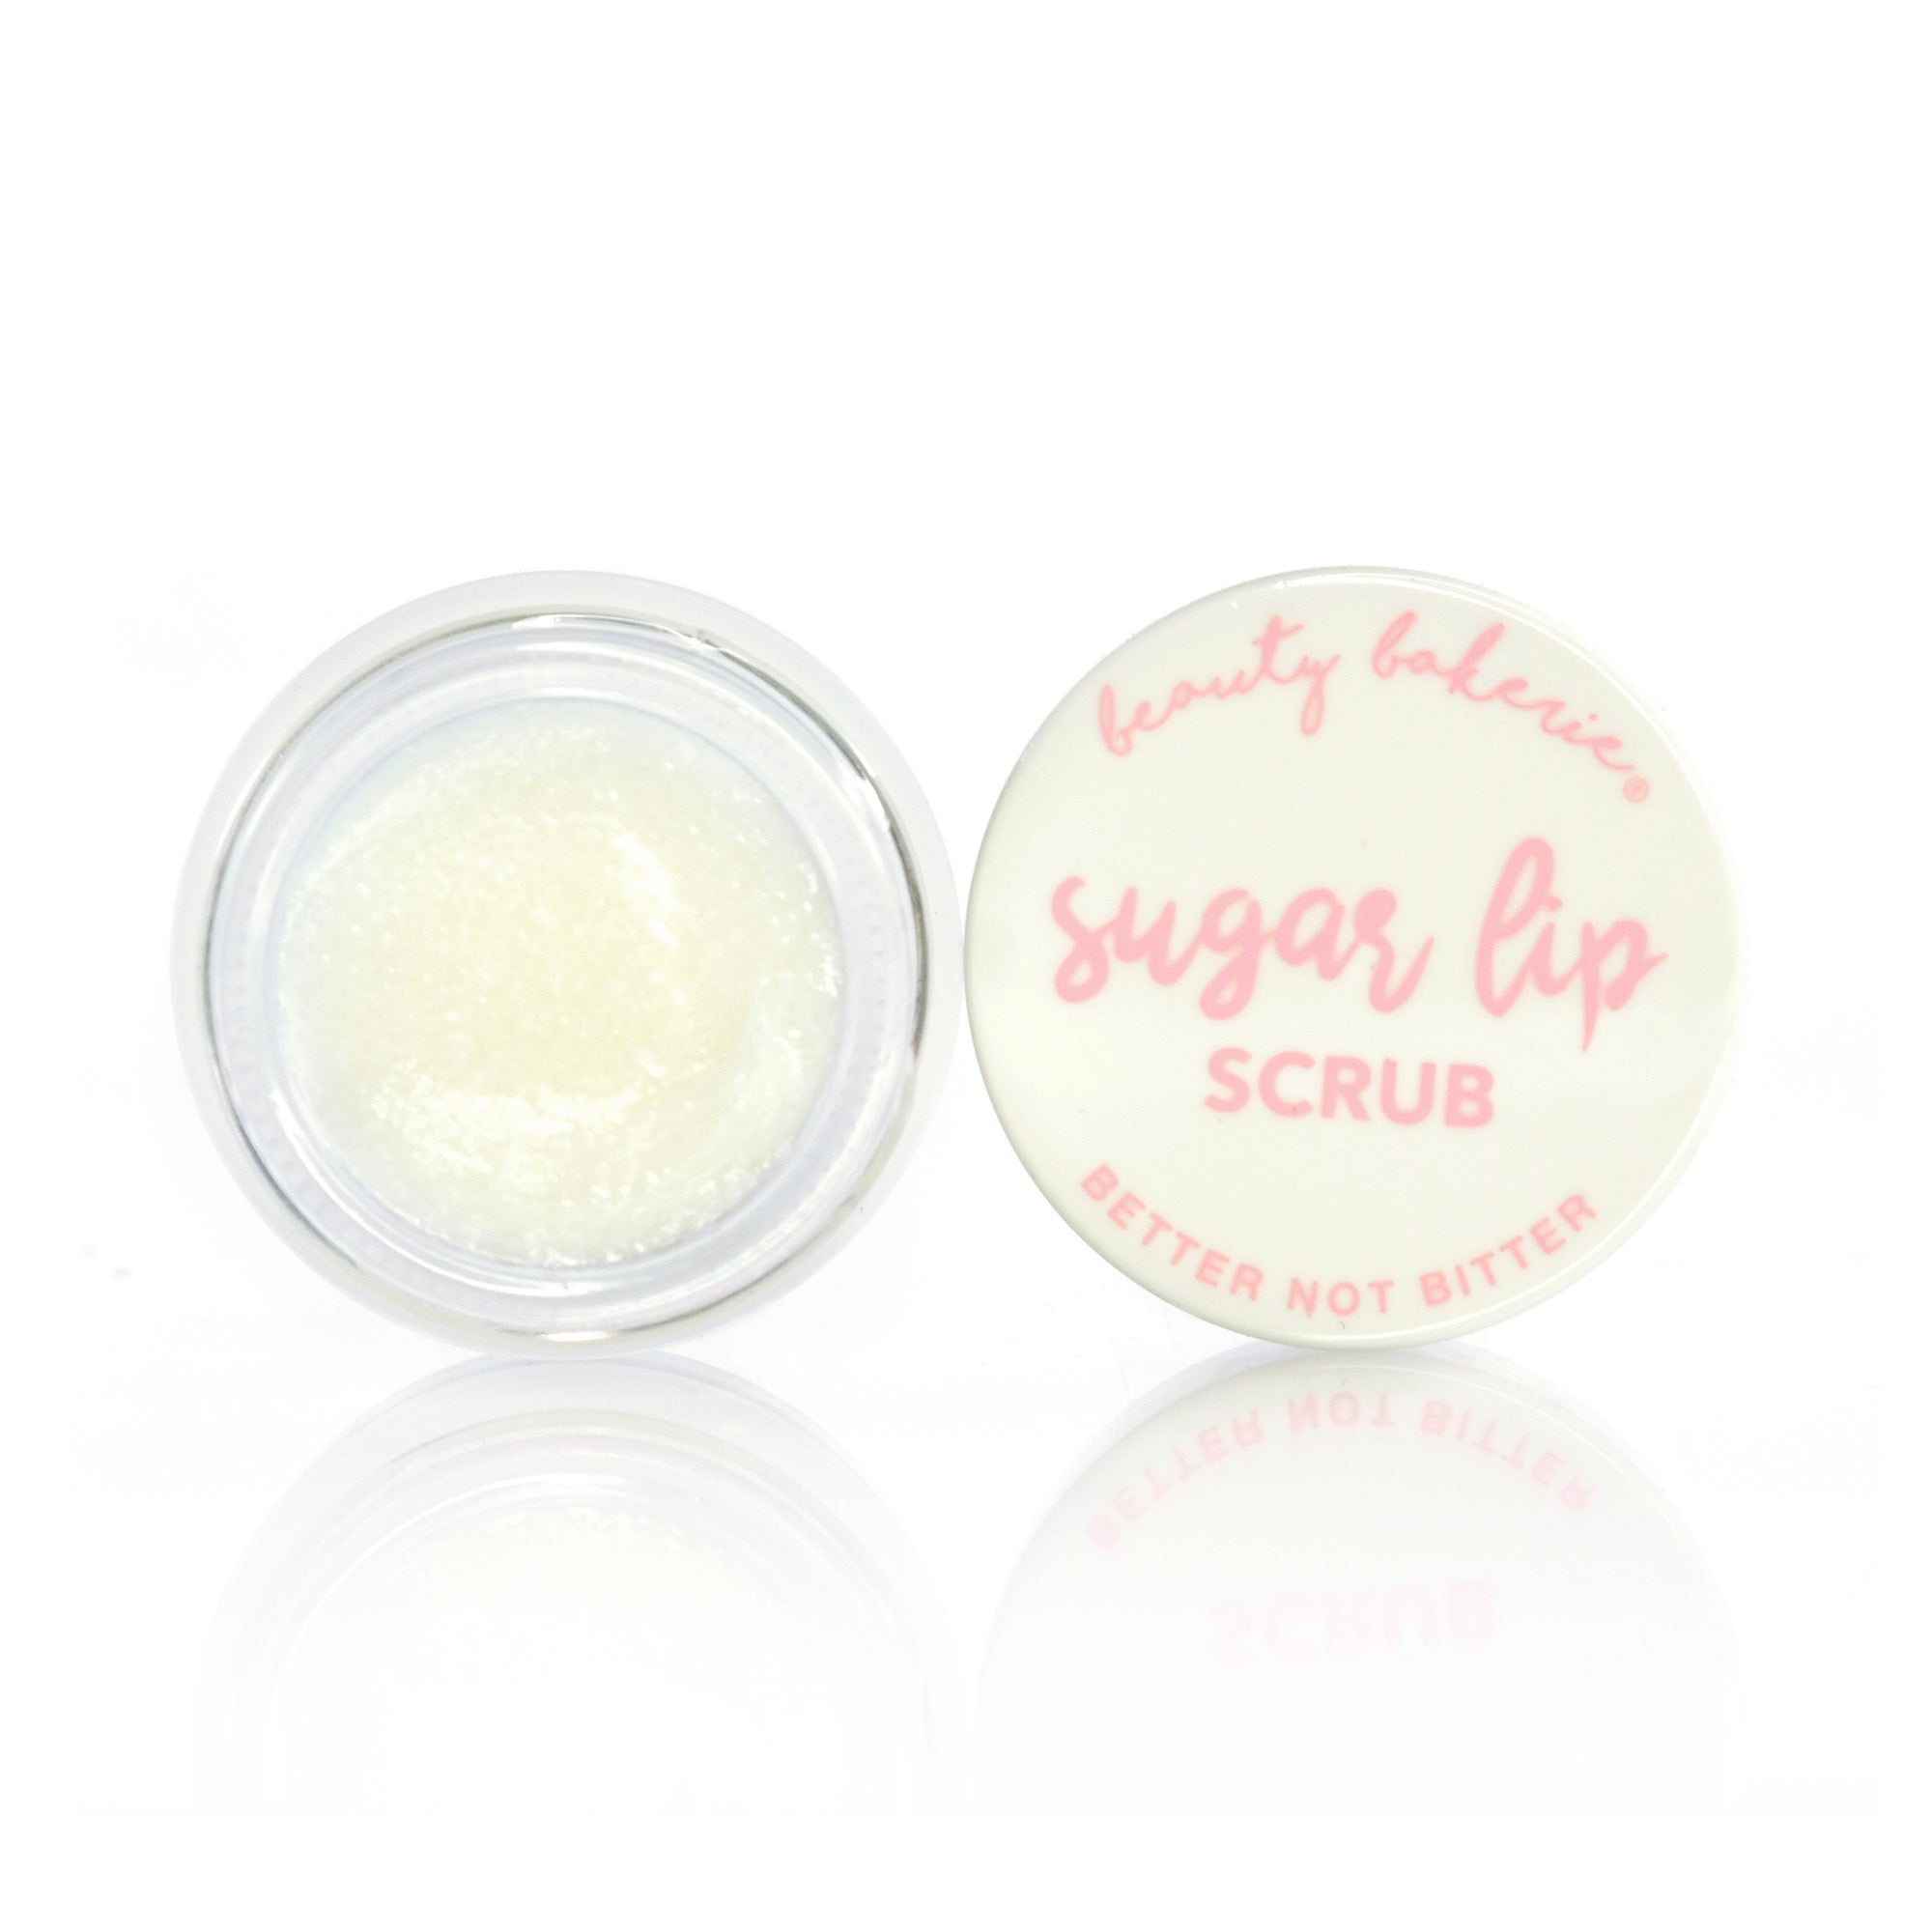 Sugar Lip Scrub - Peppermint